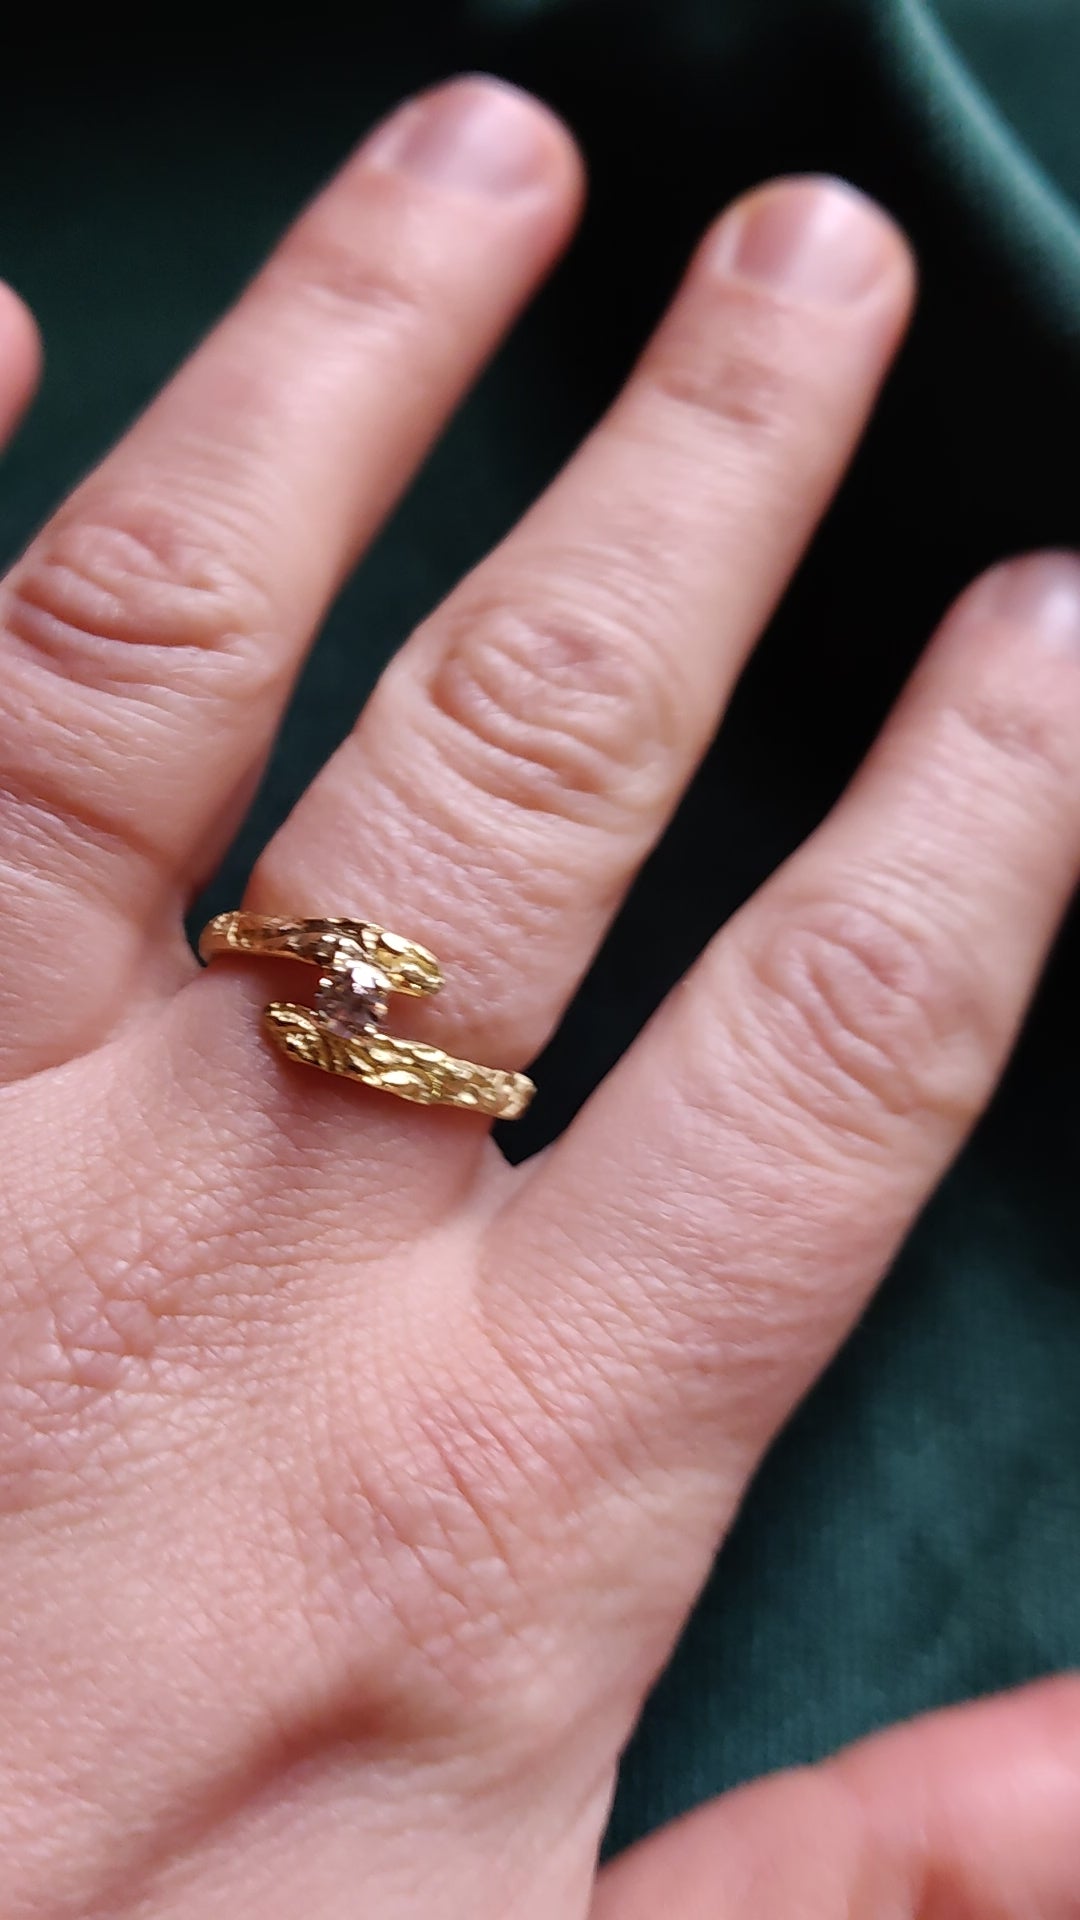 De diamant is gezet in pootjes en staat tussen de open band van de ring. De ring heeft een oriëntaals motief. 